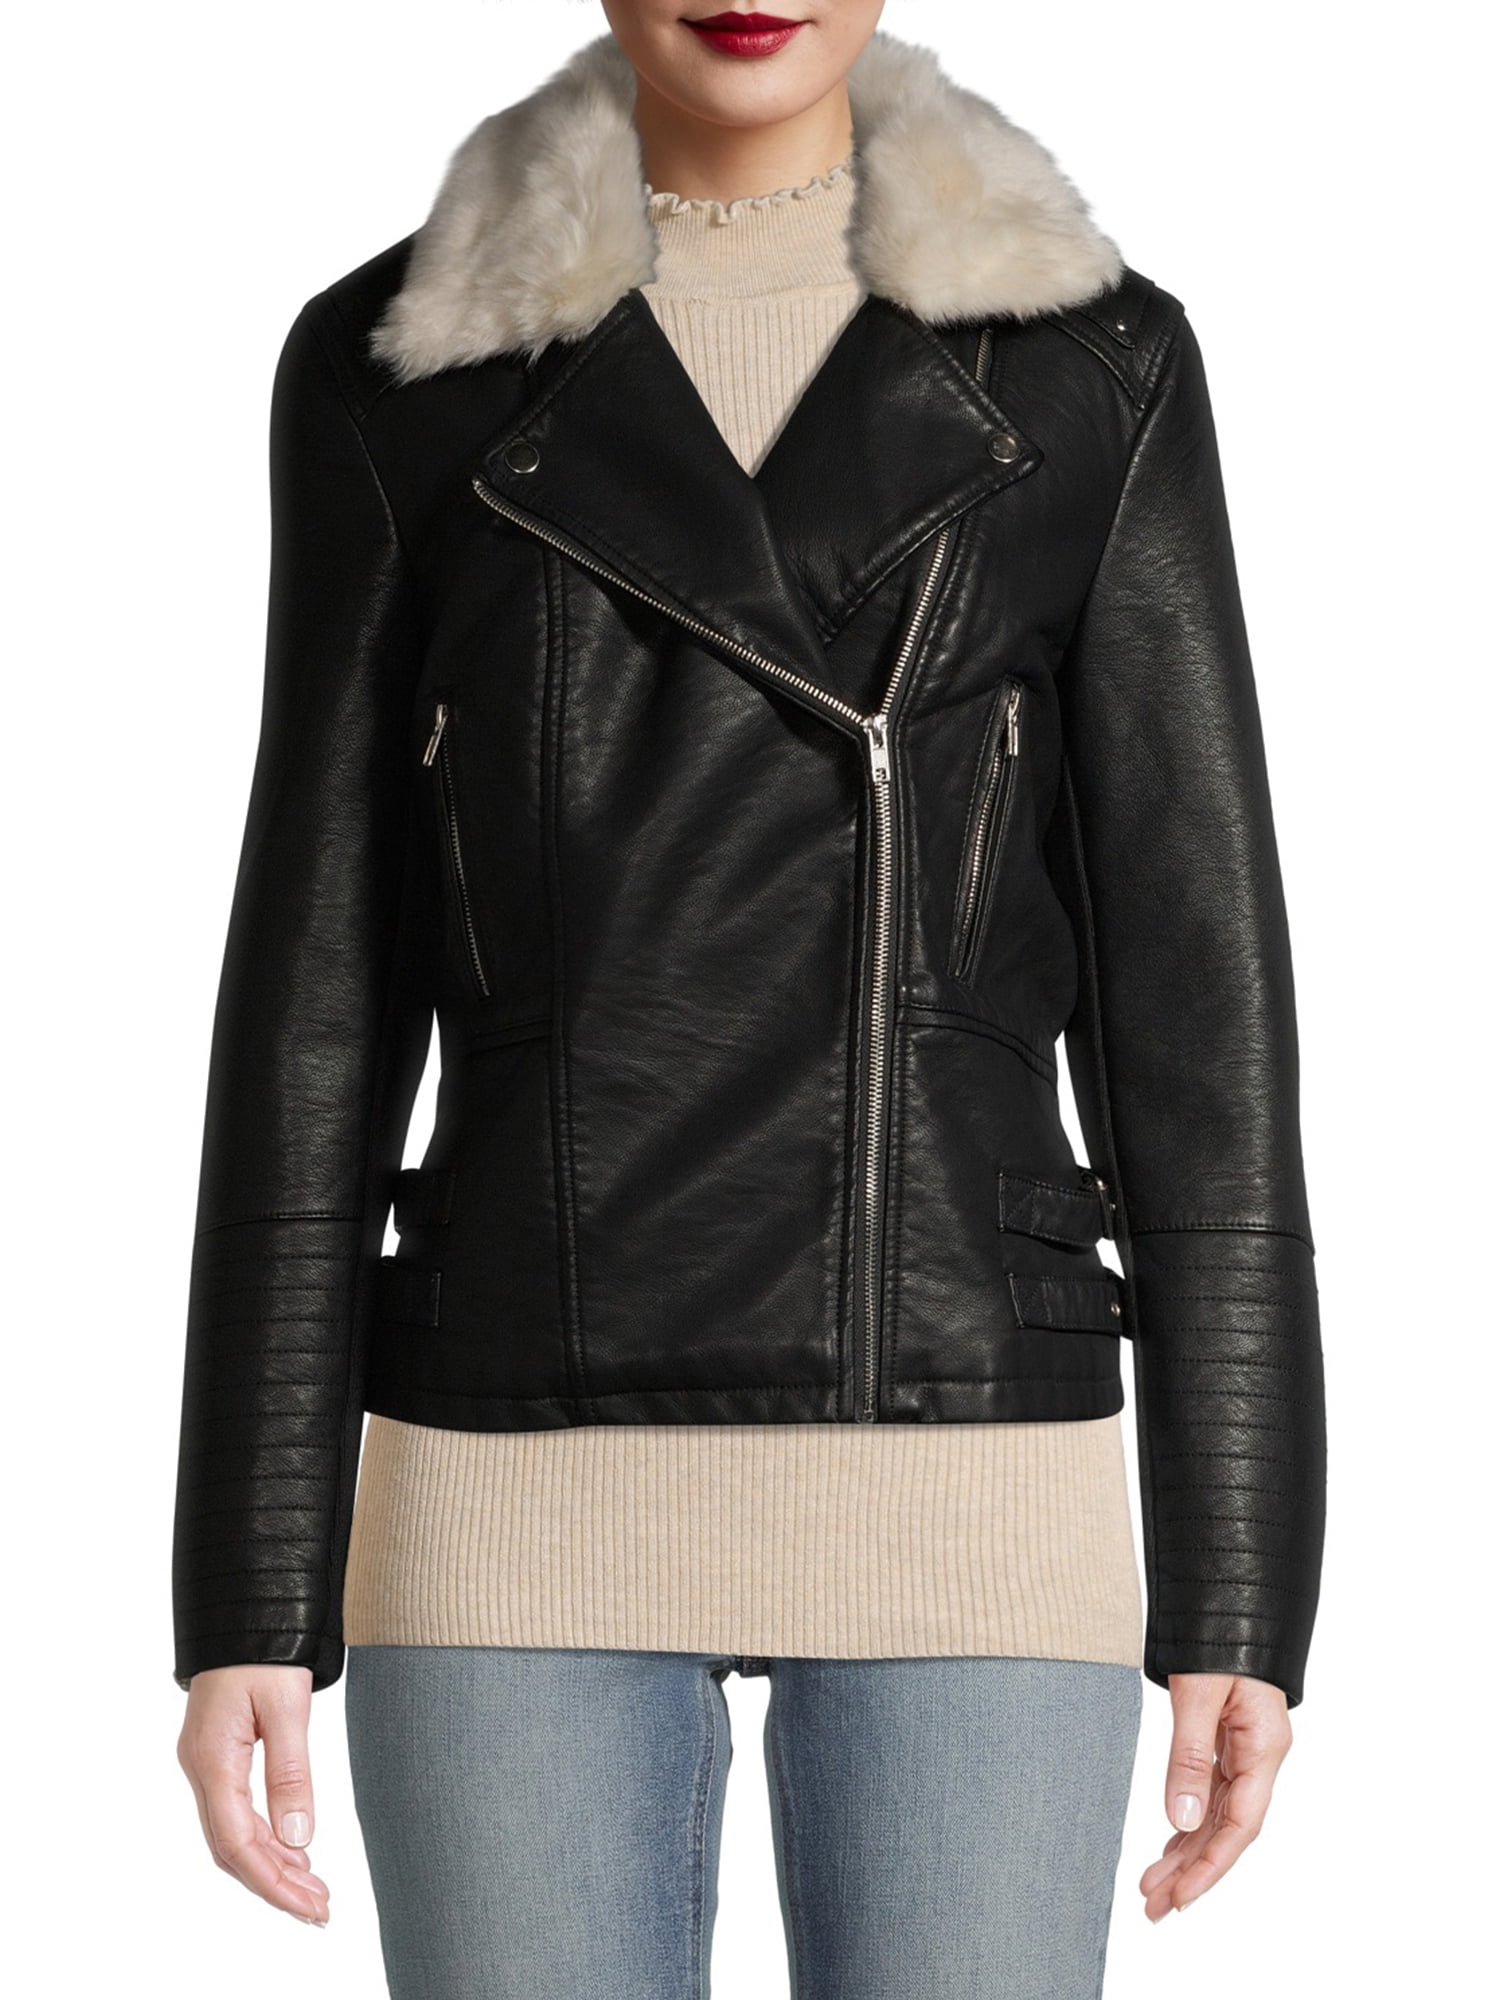 Vogue Multi Color Faux Fur Coat Short Style Slim Fit Womens PU Leather Jacket 